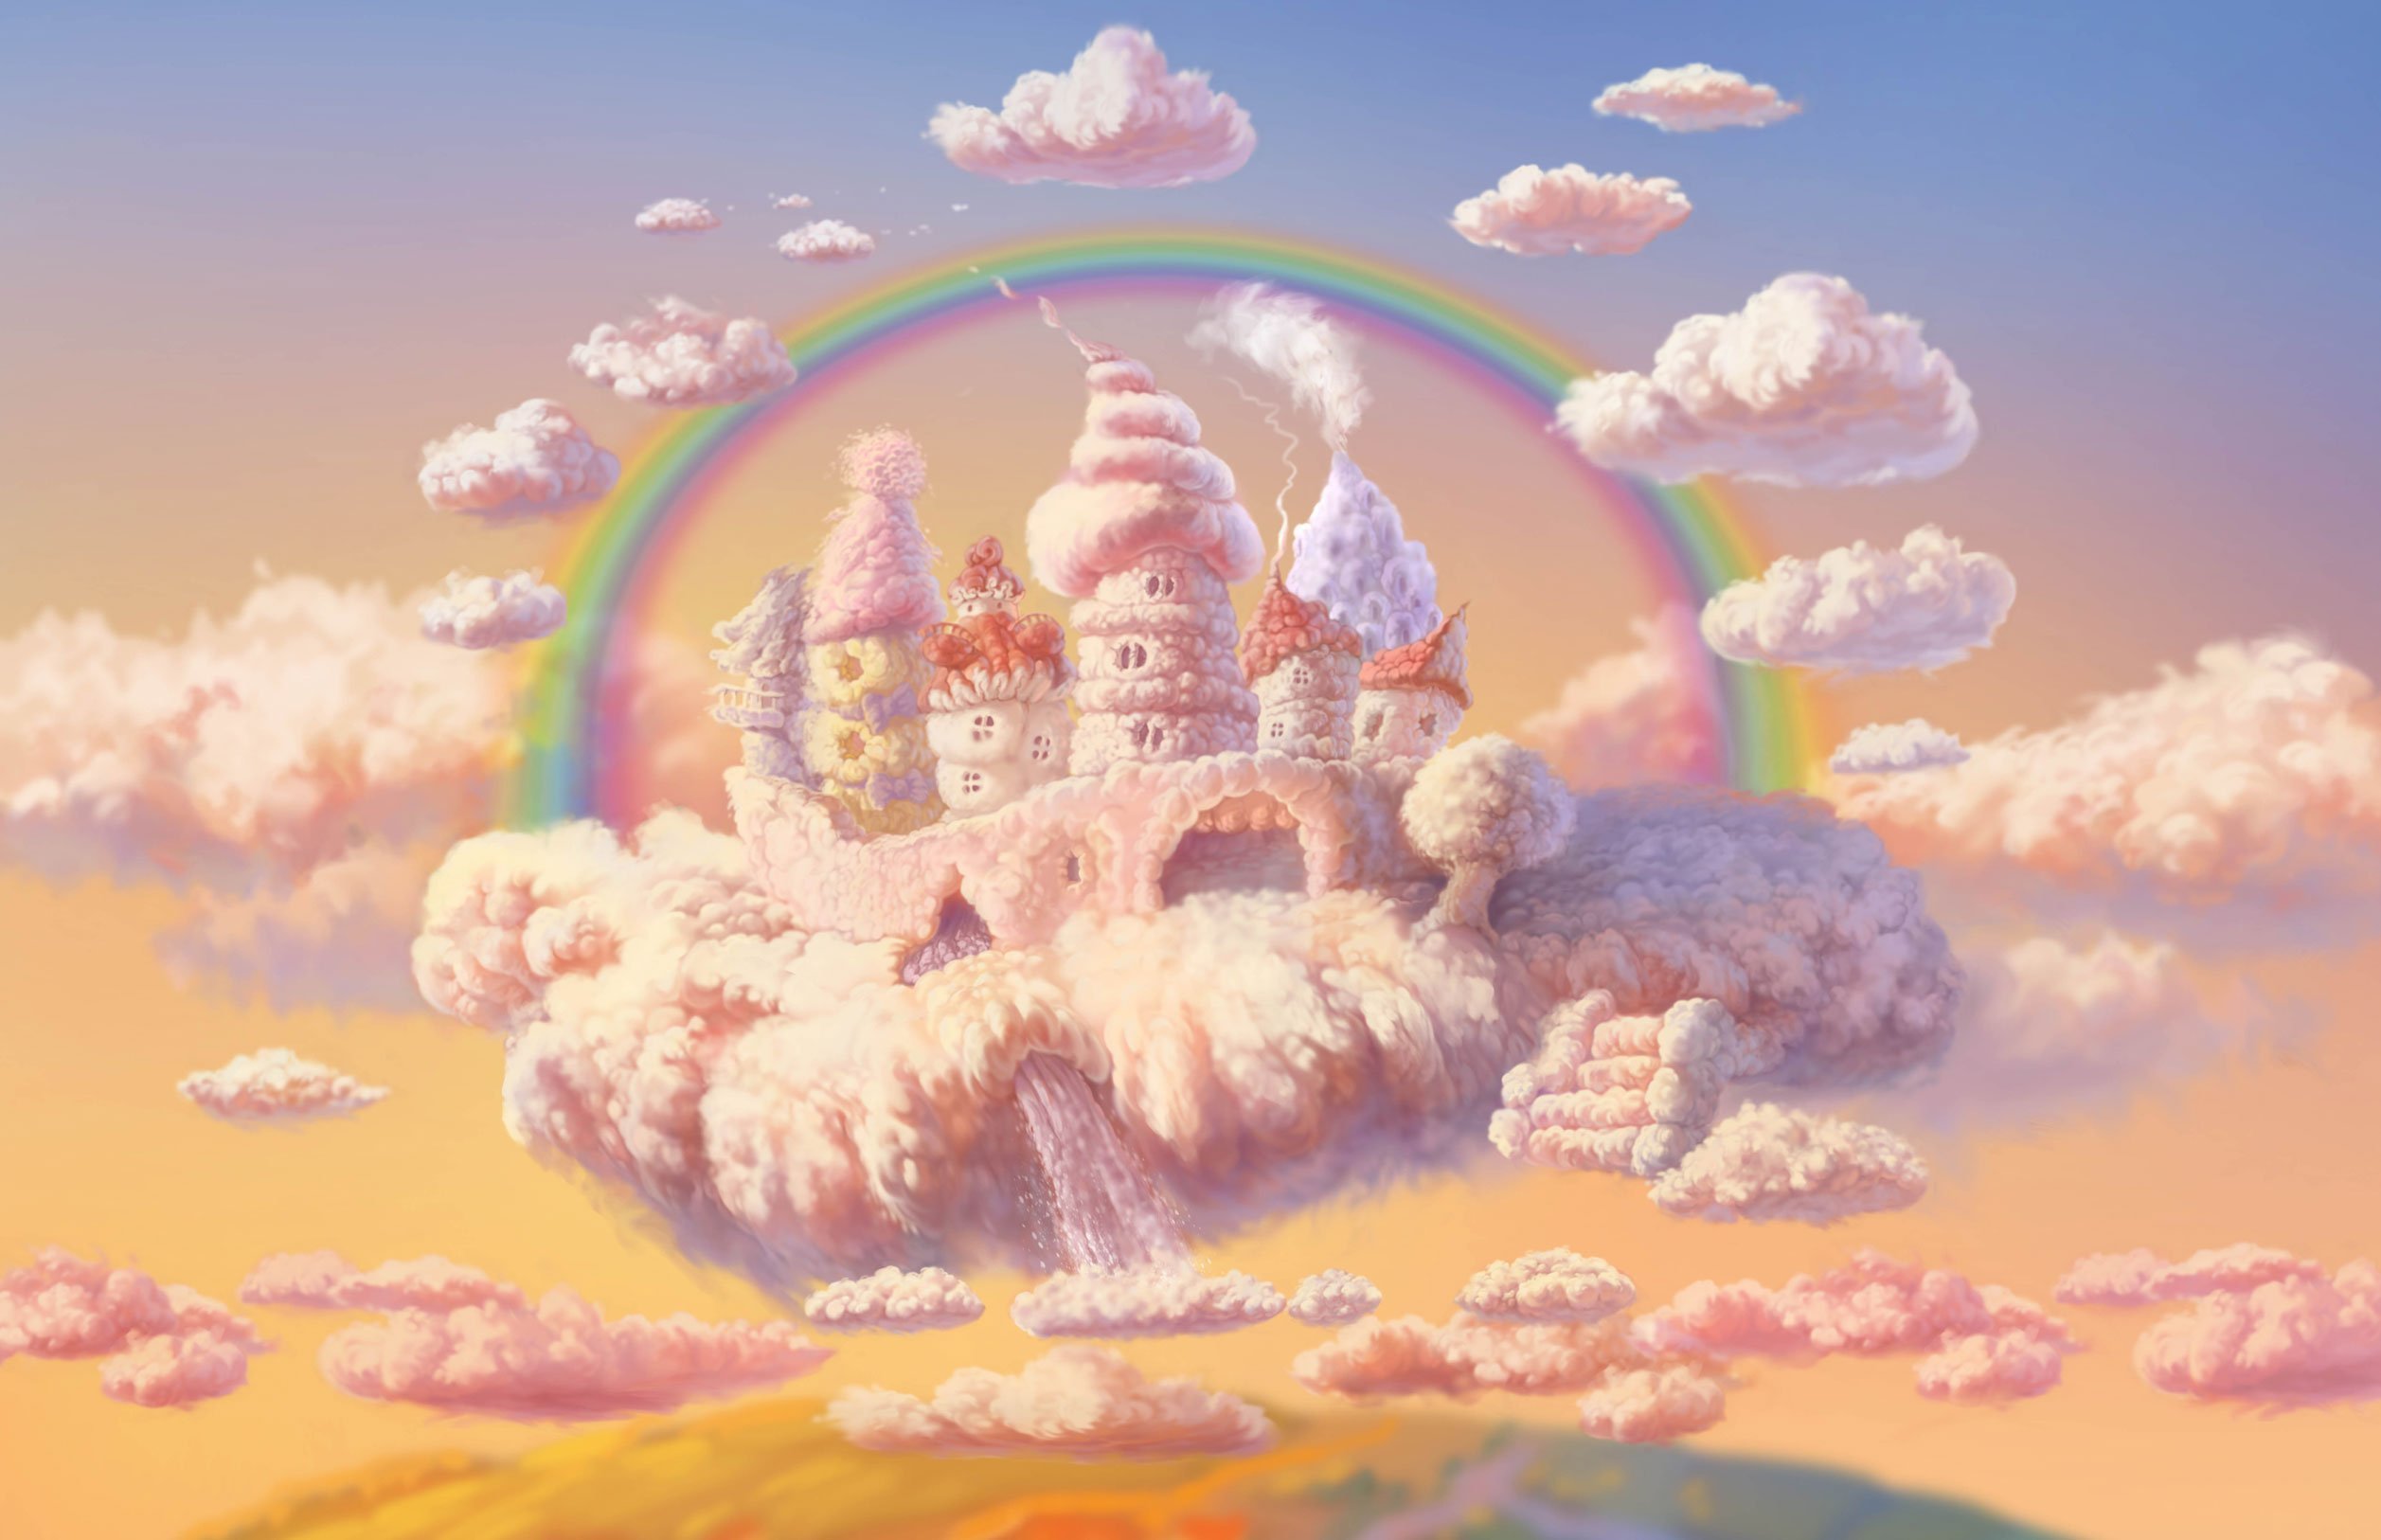 Мир чудес. Сказочная Страна. Сказочное небо. Воздушный замок. Сказочный замок в облаках.